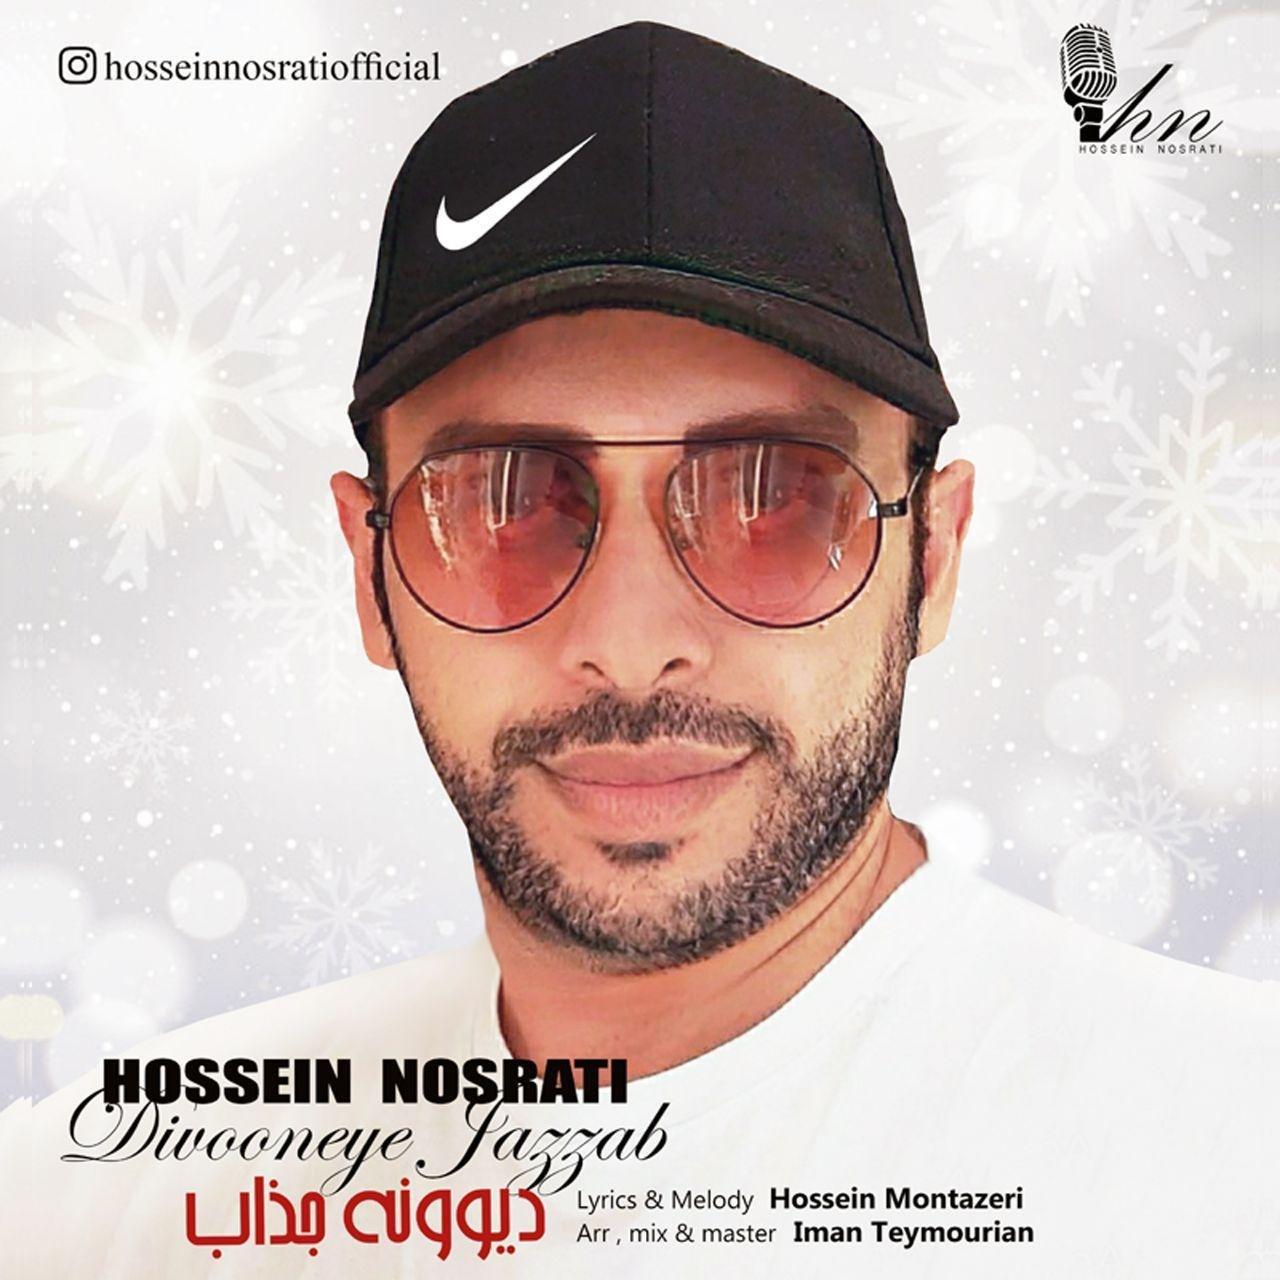 Hossein Nosrati – Divooneye Jazzab